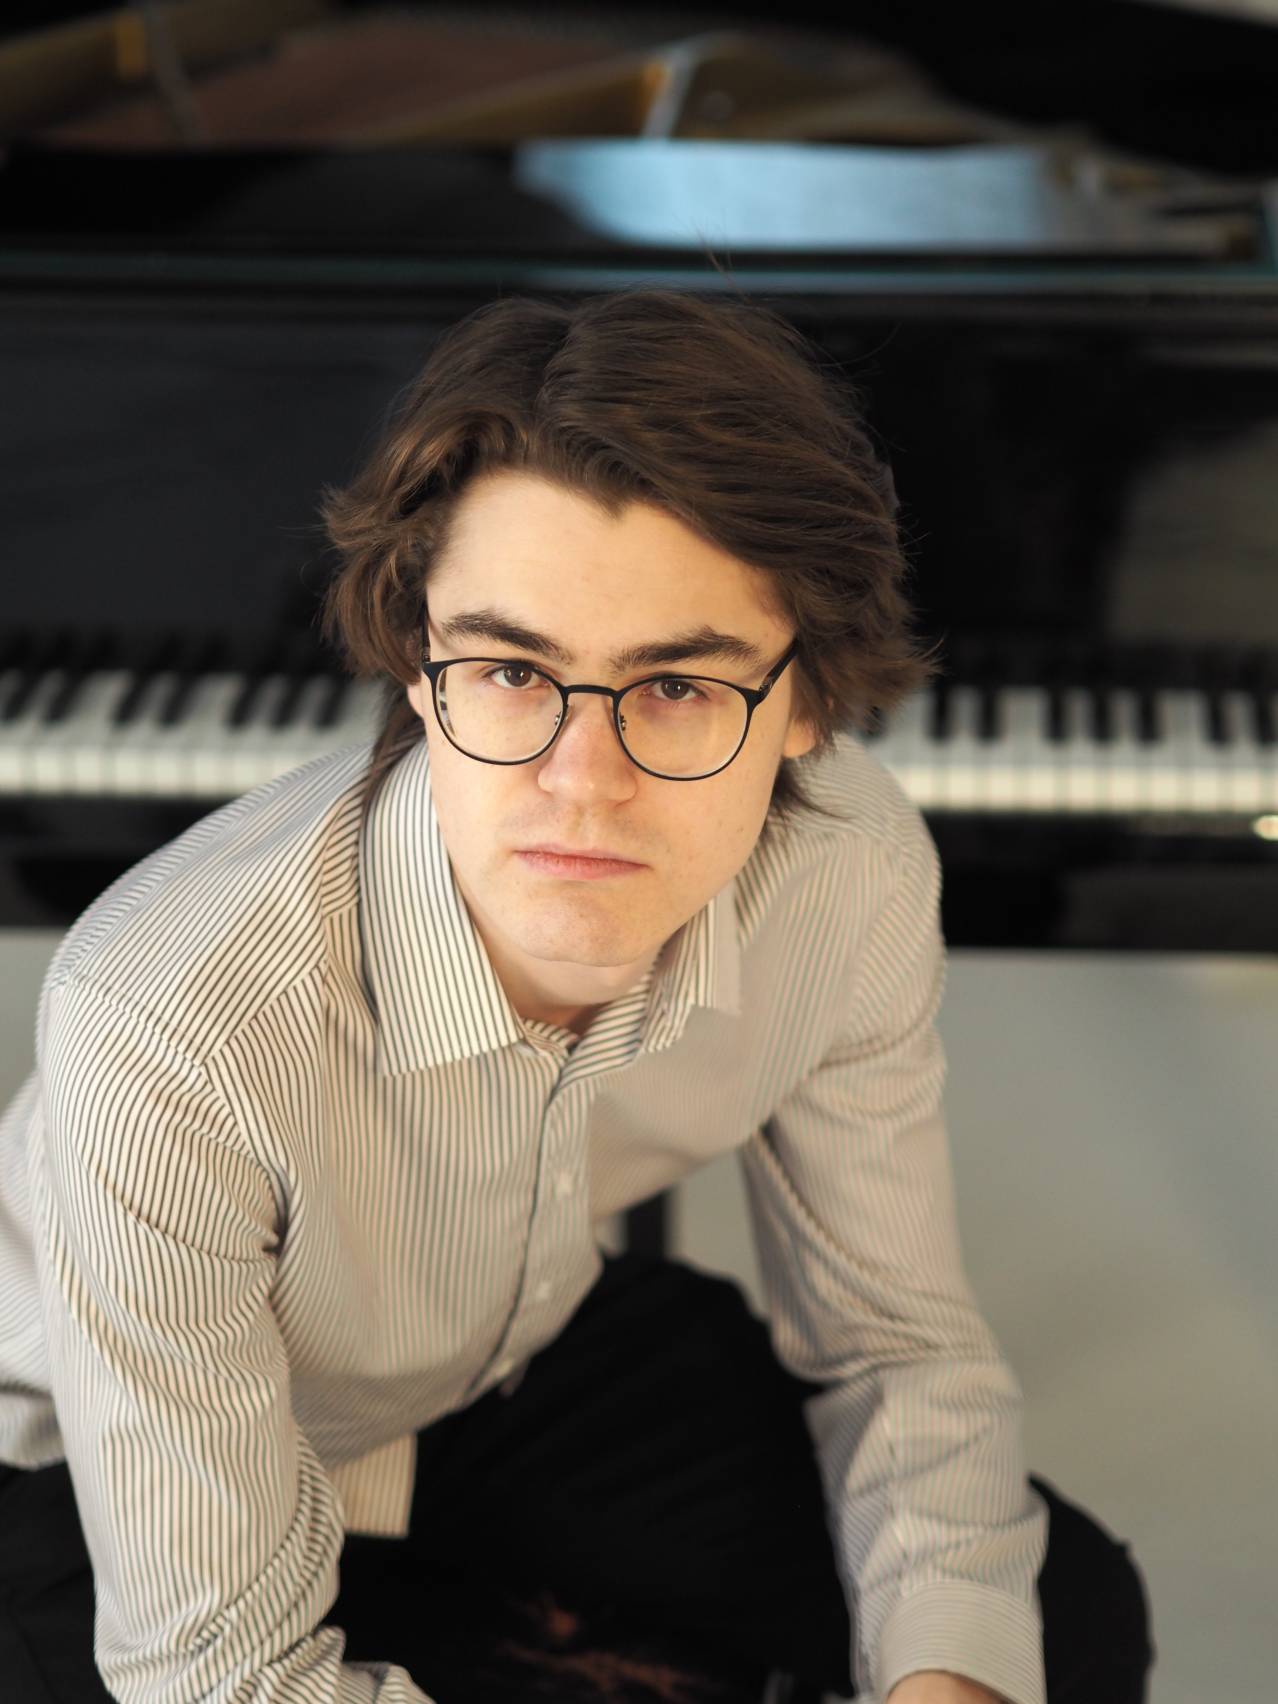 Стипендиат Фонда пианист Андрей Лешкин: талант, признанный мировым сообществом